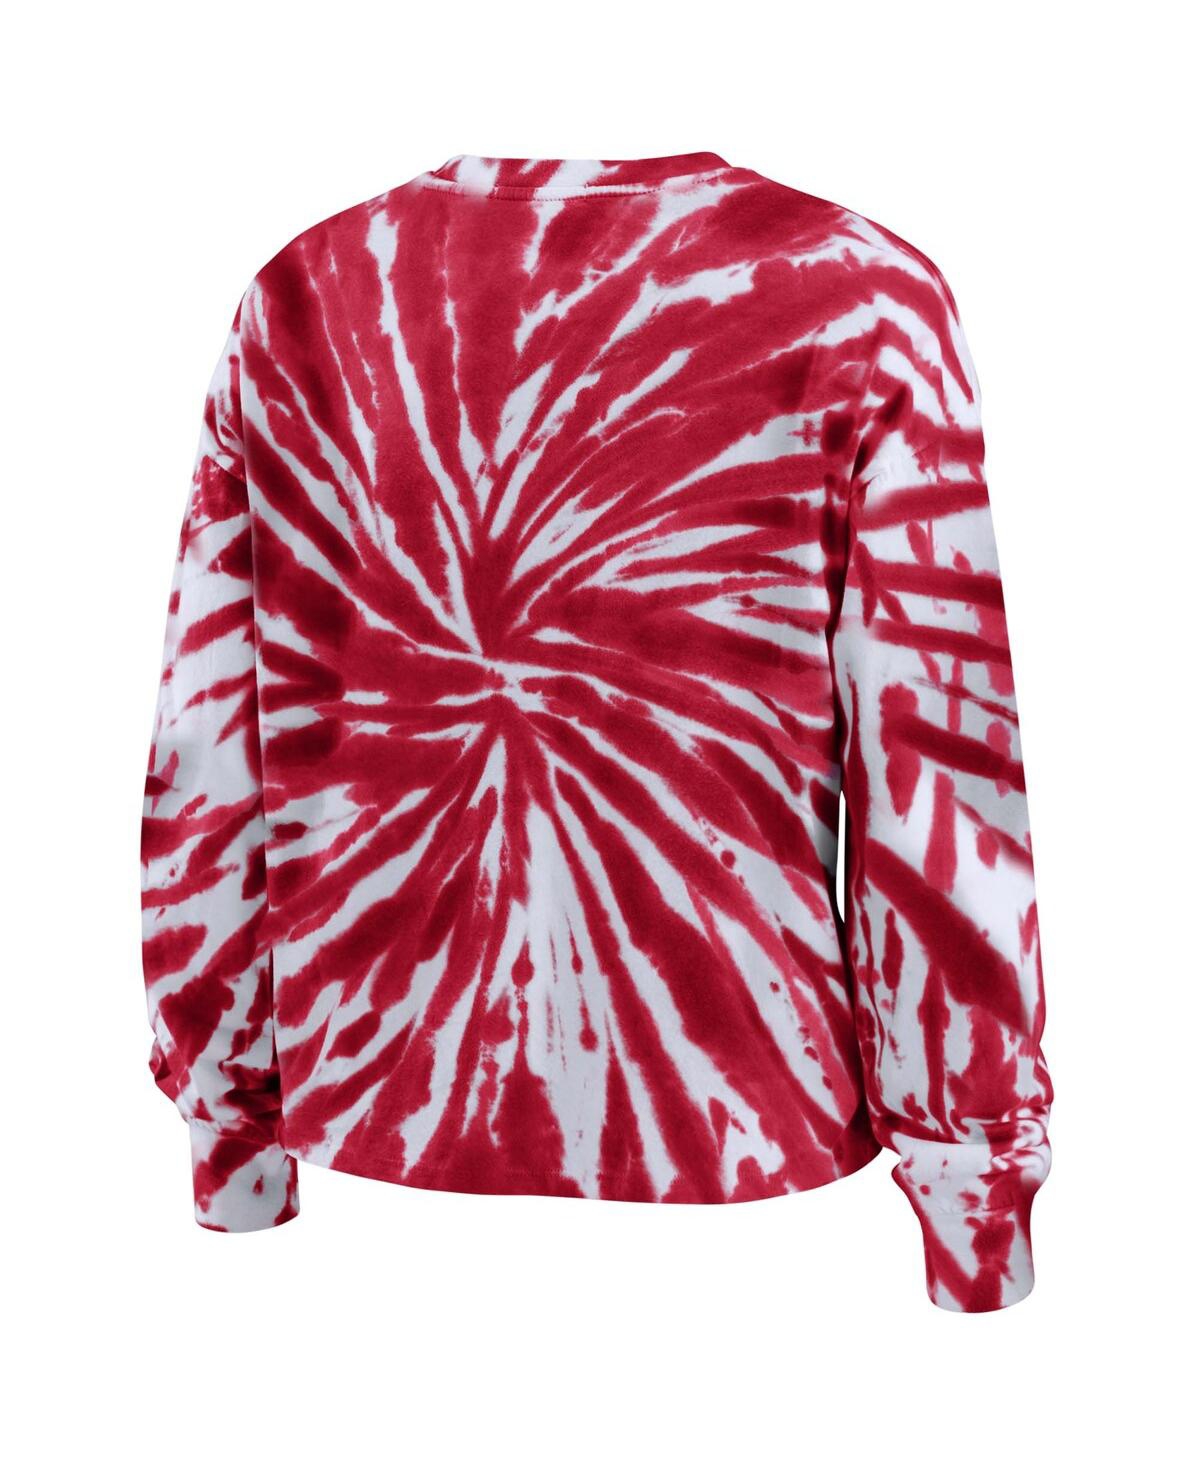 Shop Wear By Erin Andrews Women's  Red Wisconsin Badgers Tie-dye Long Sleeve T-shirt